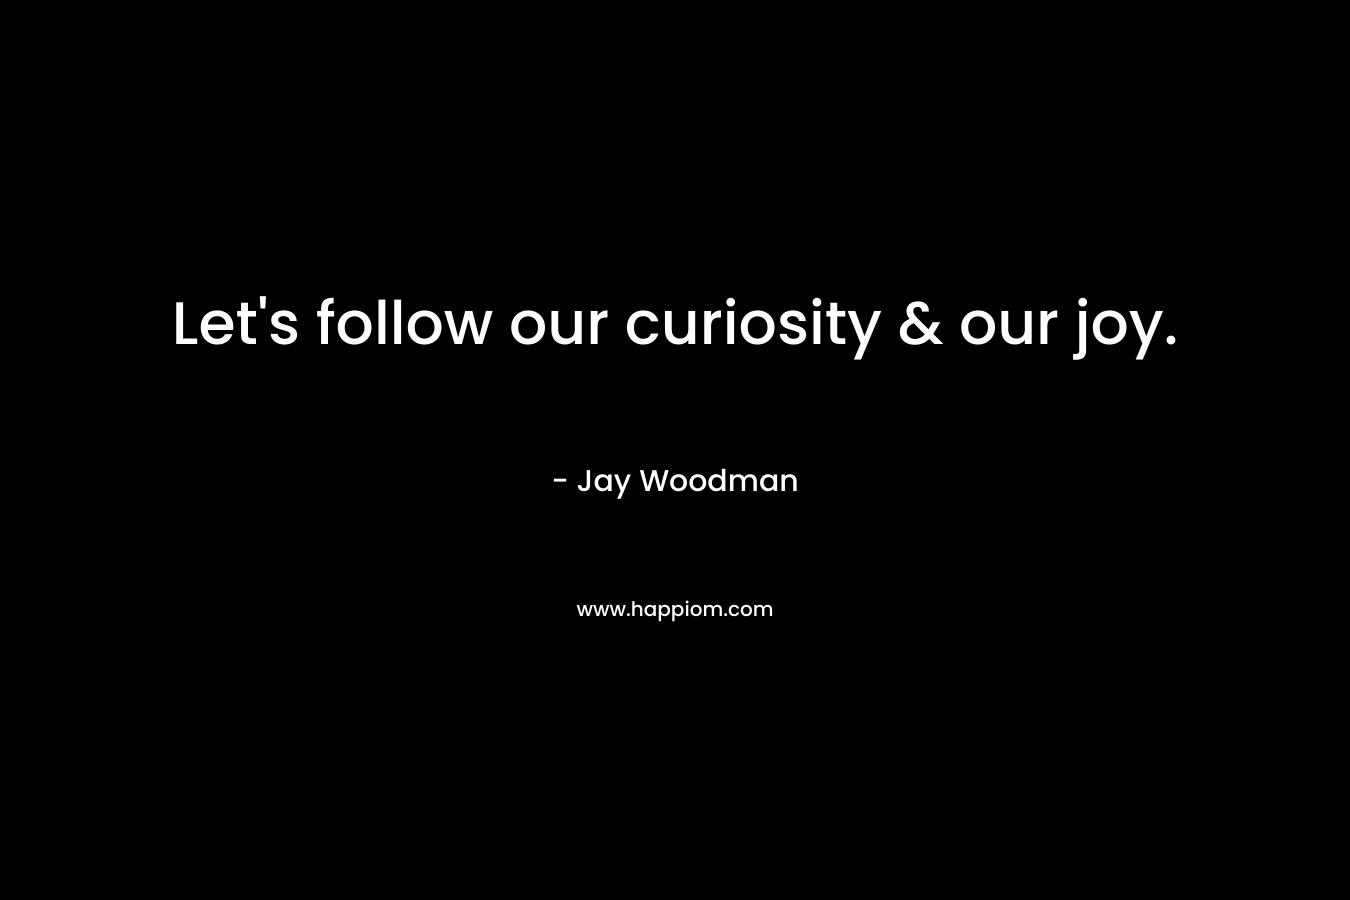 Let's follow our curiosity & our joy.